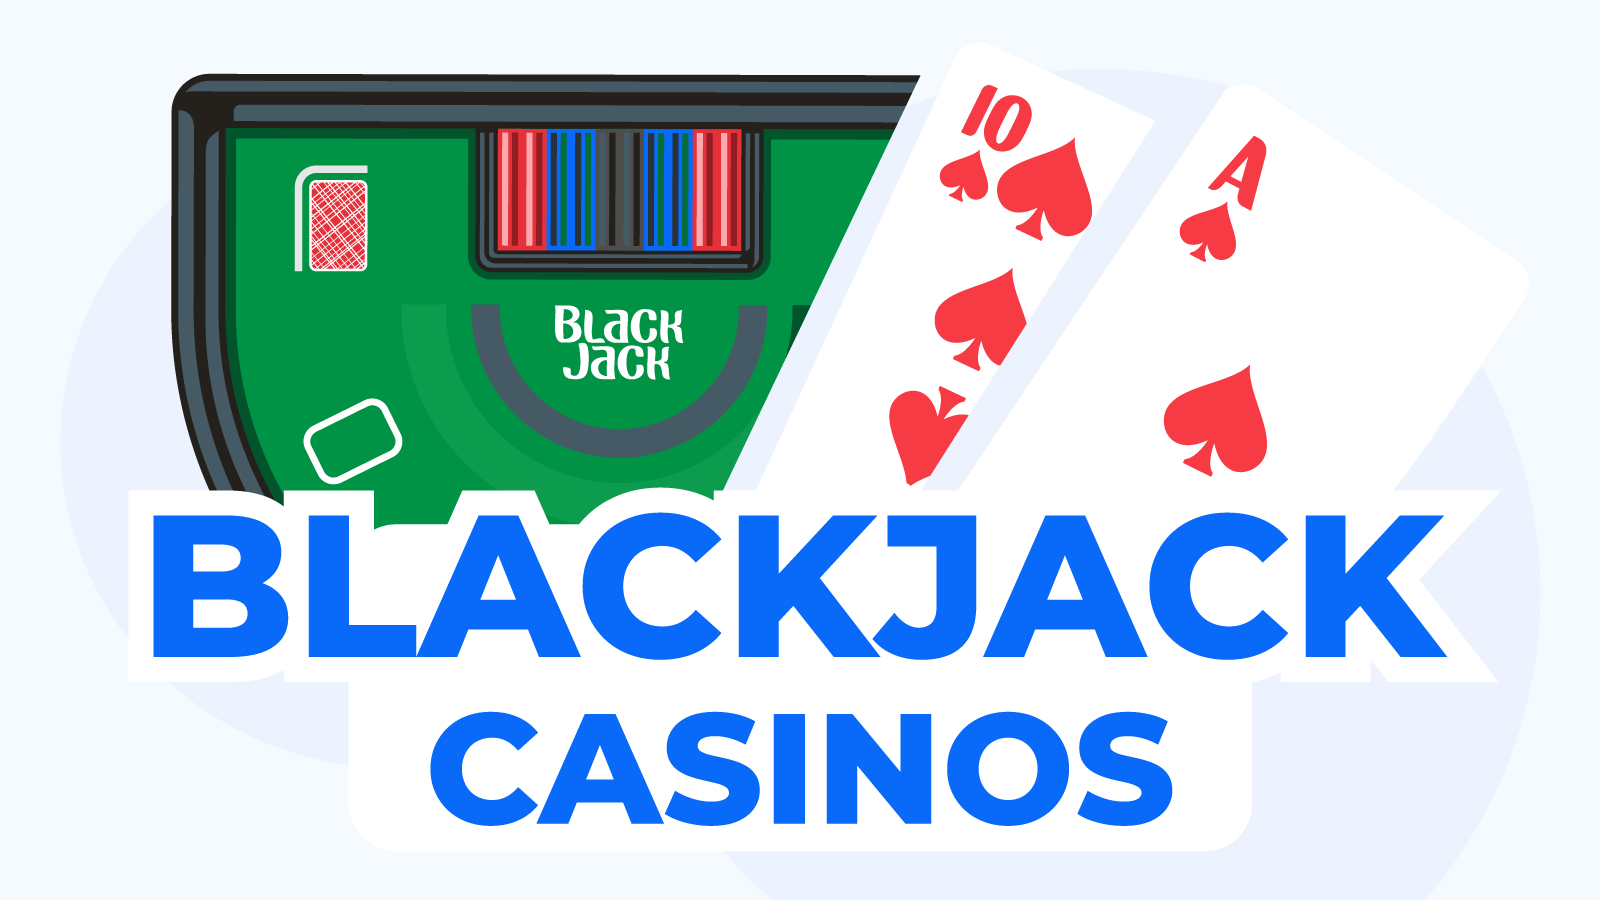 Blackjack Casinos And Bonuses: NZ Full List